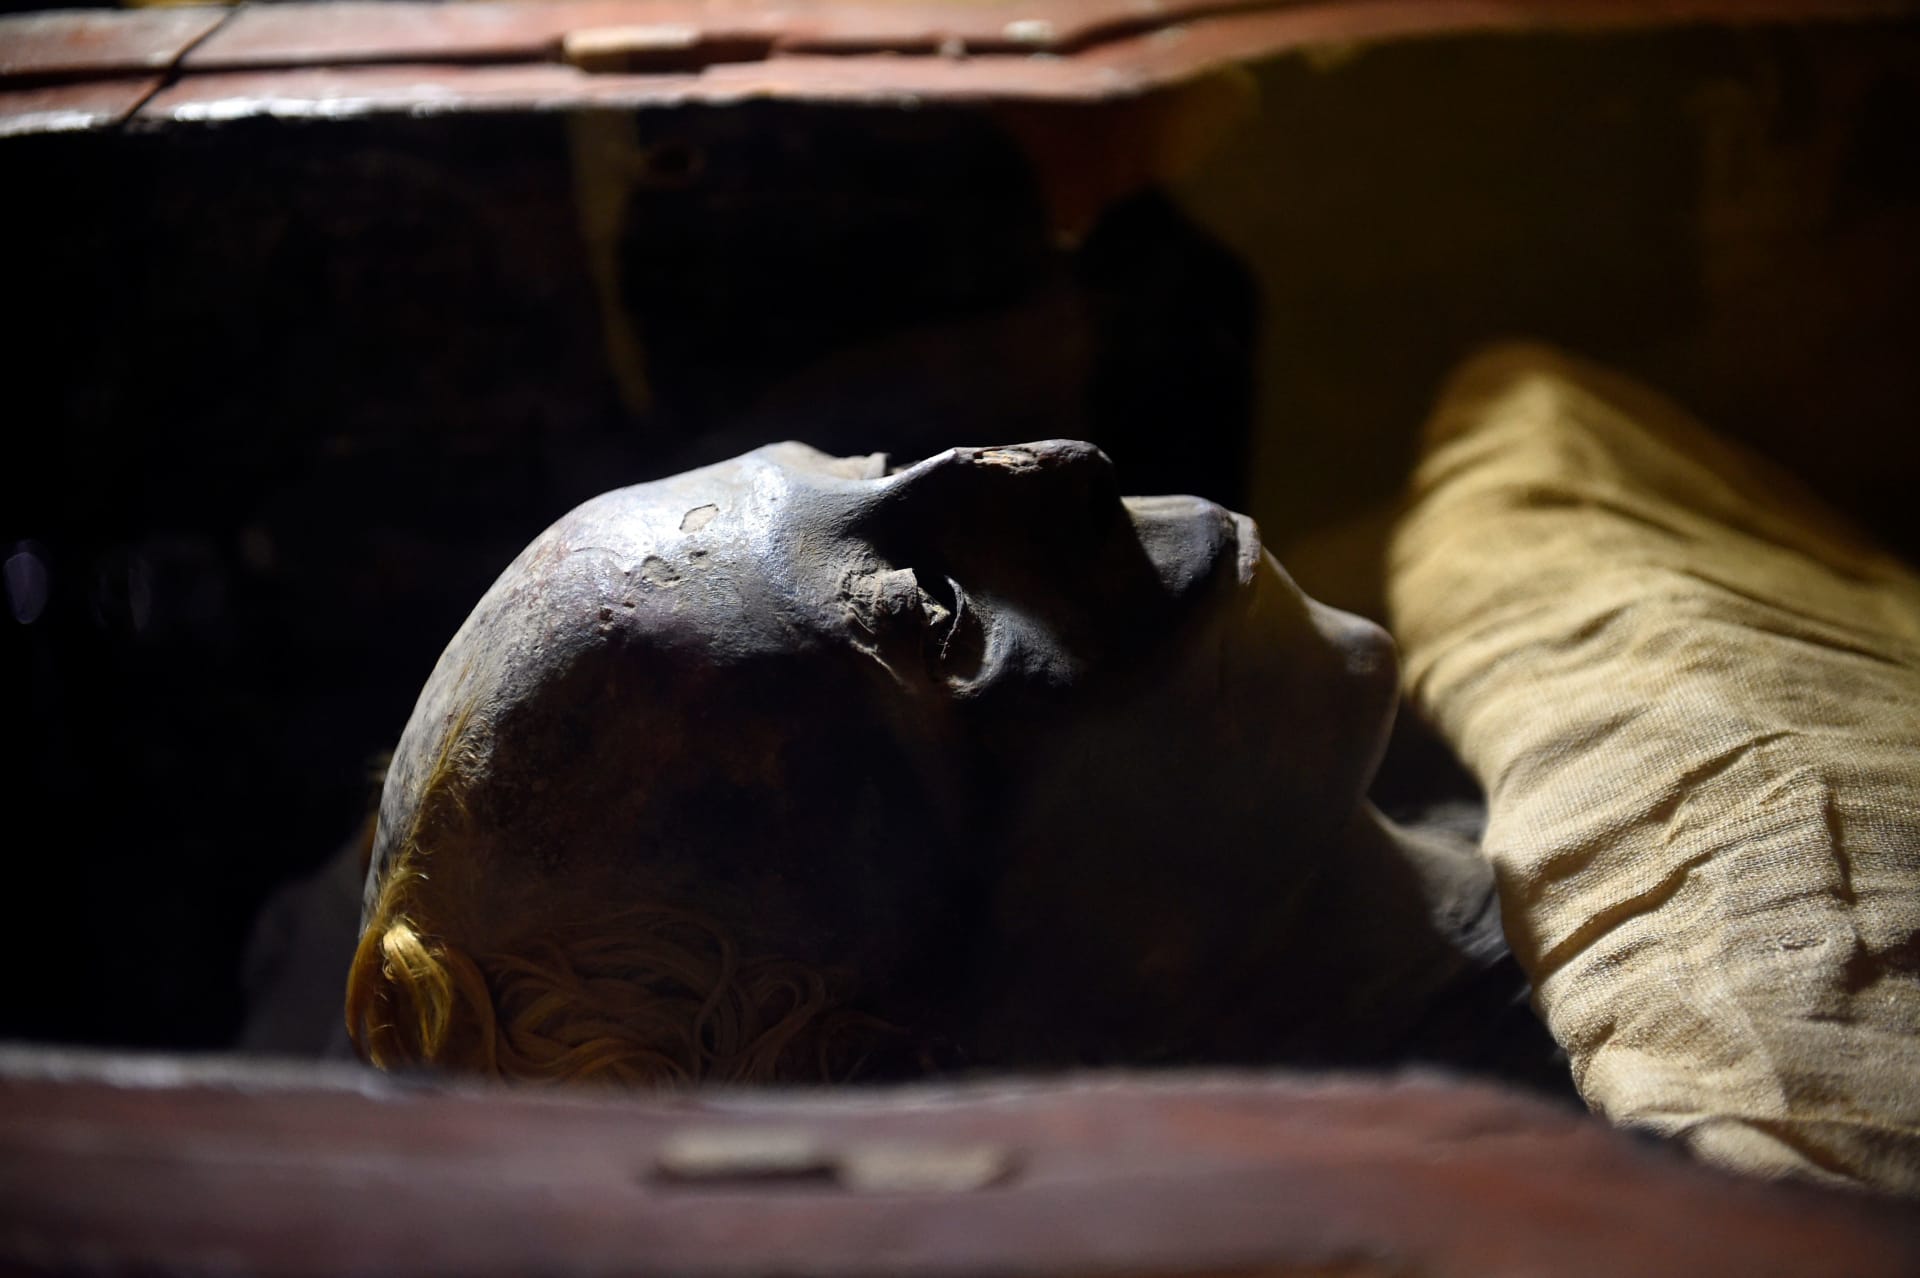 اكتشاف جديد في التحنيط المصري.. الكشف عن مومياء مغطاة بالكامل بدرع من الطين  